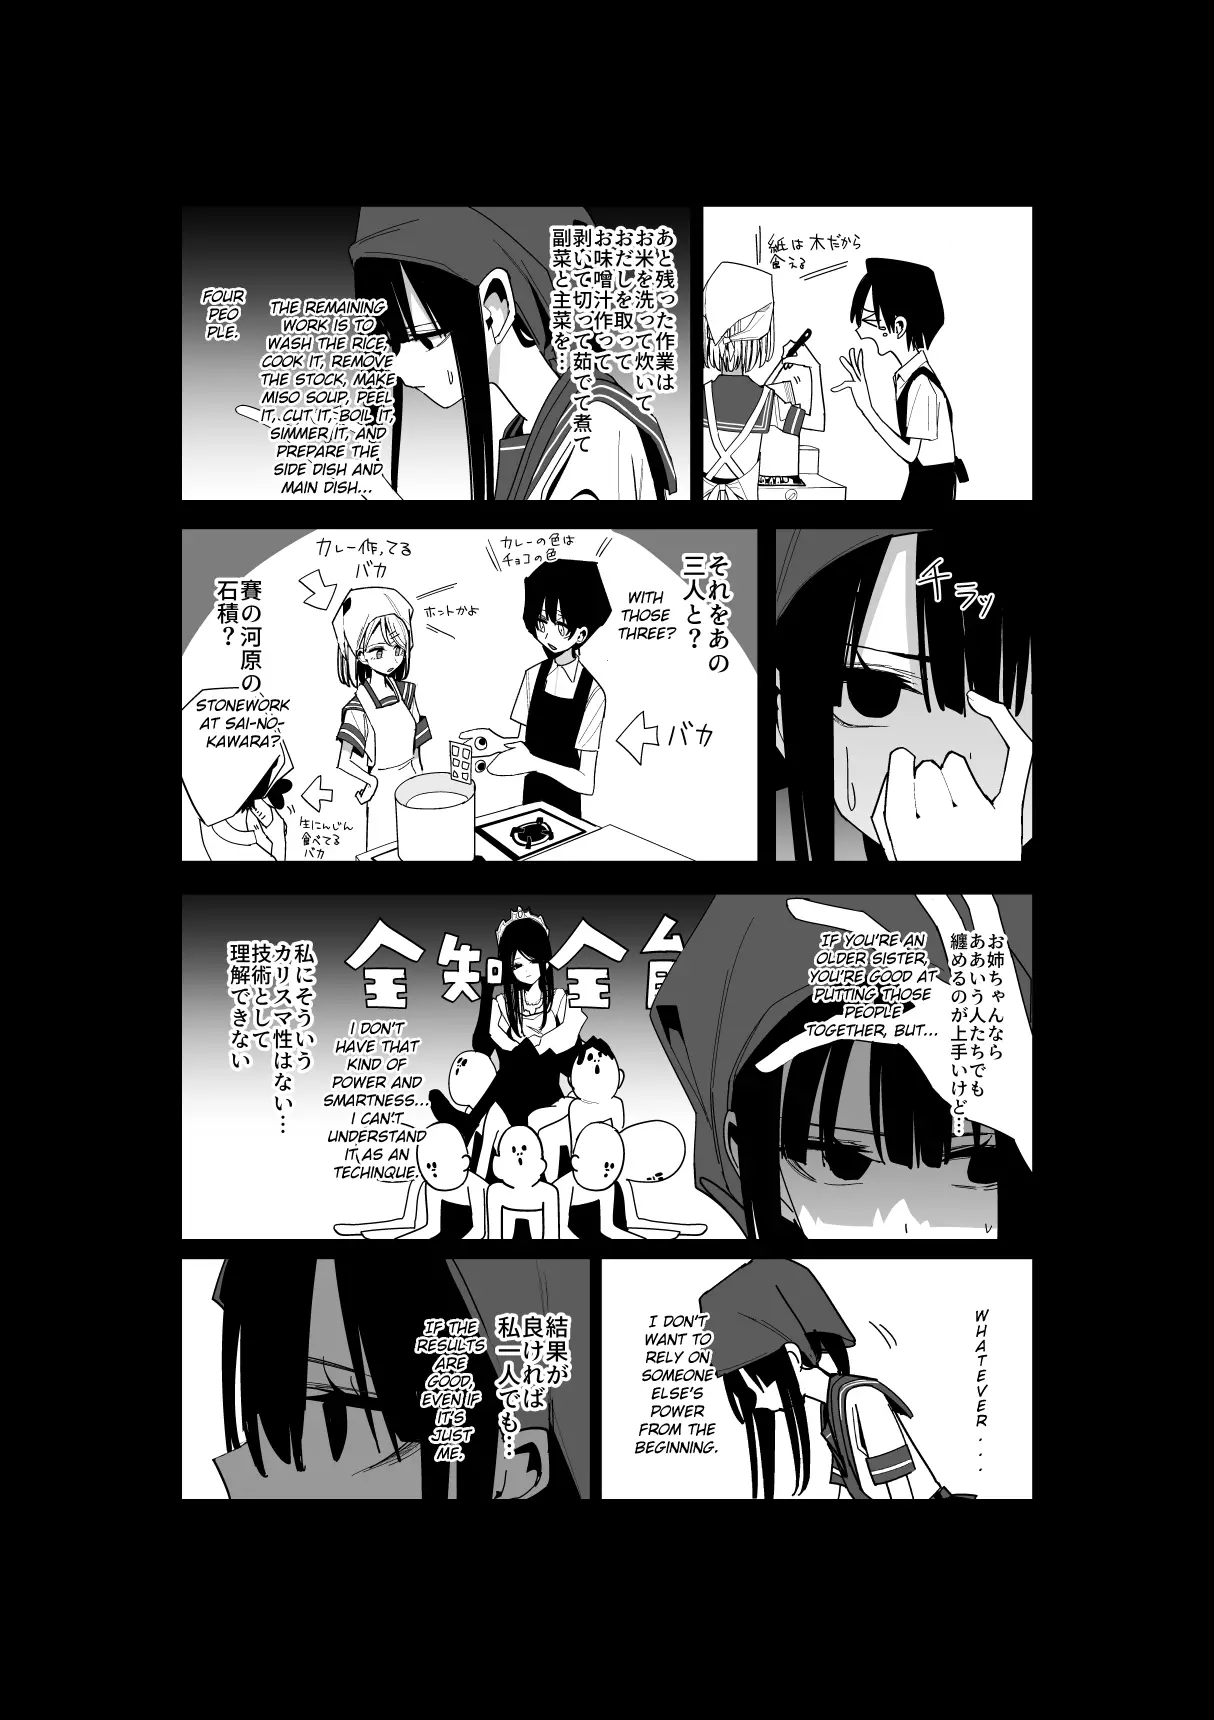 Mitsuishi-San - 25 page 8-87174516